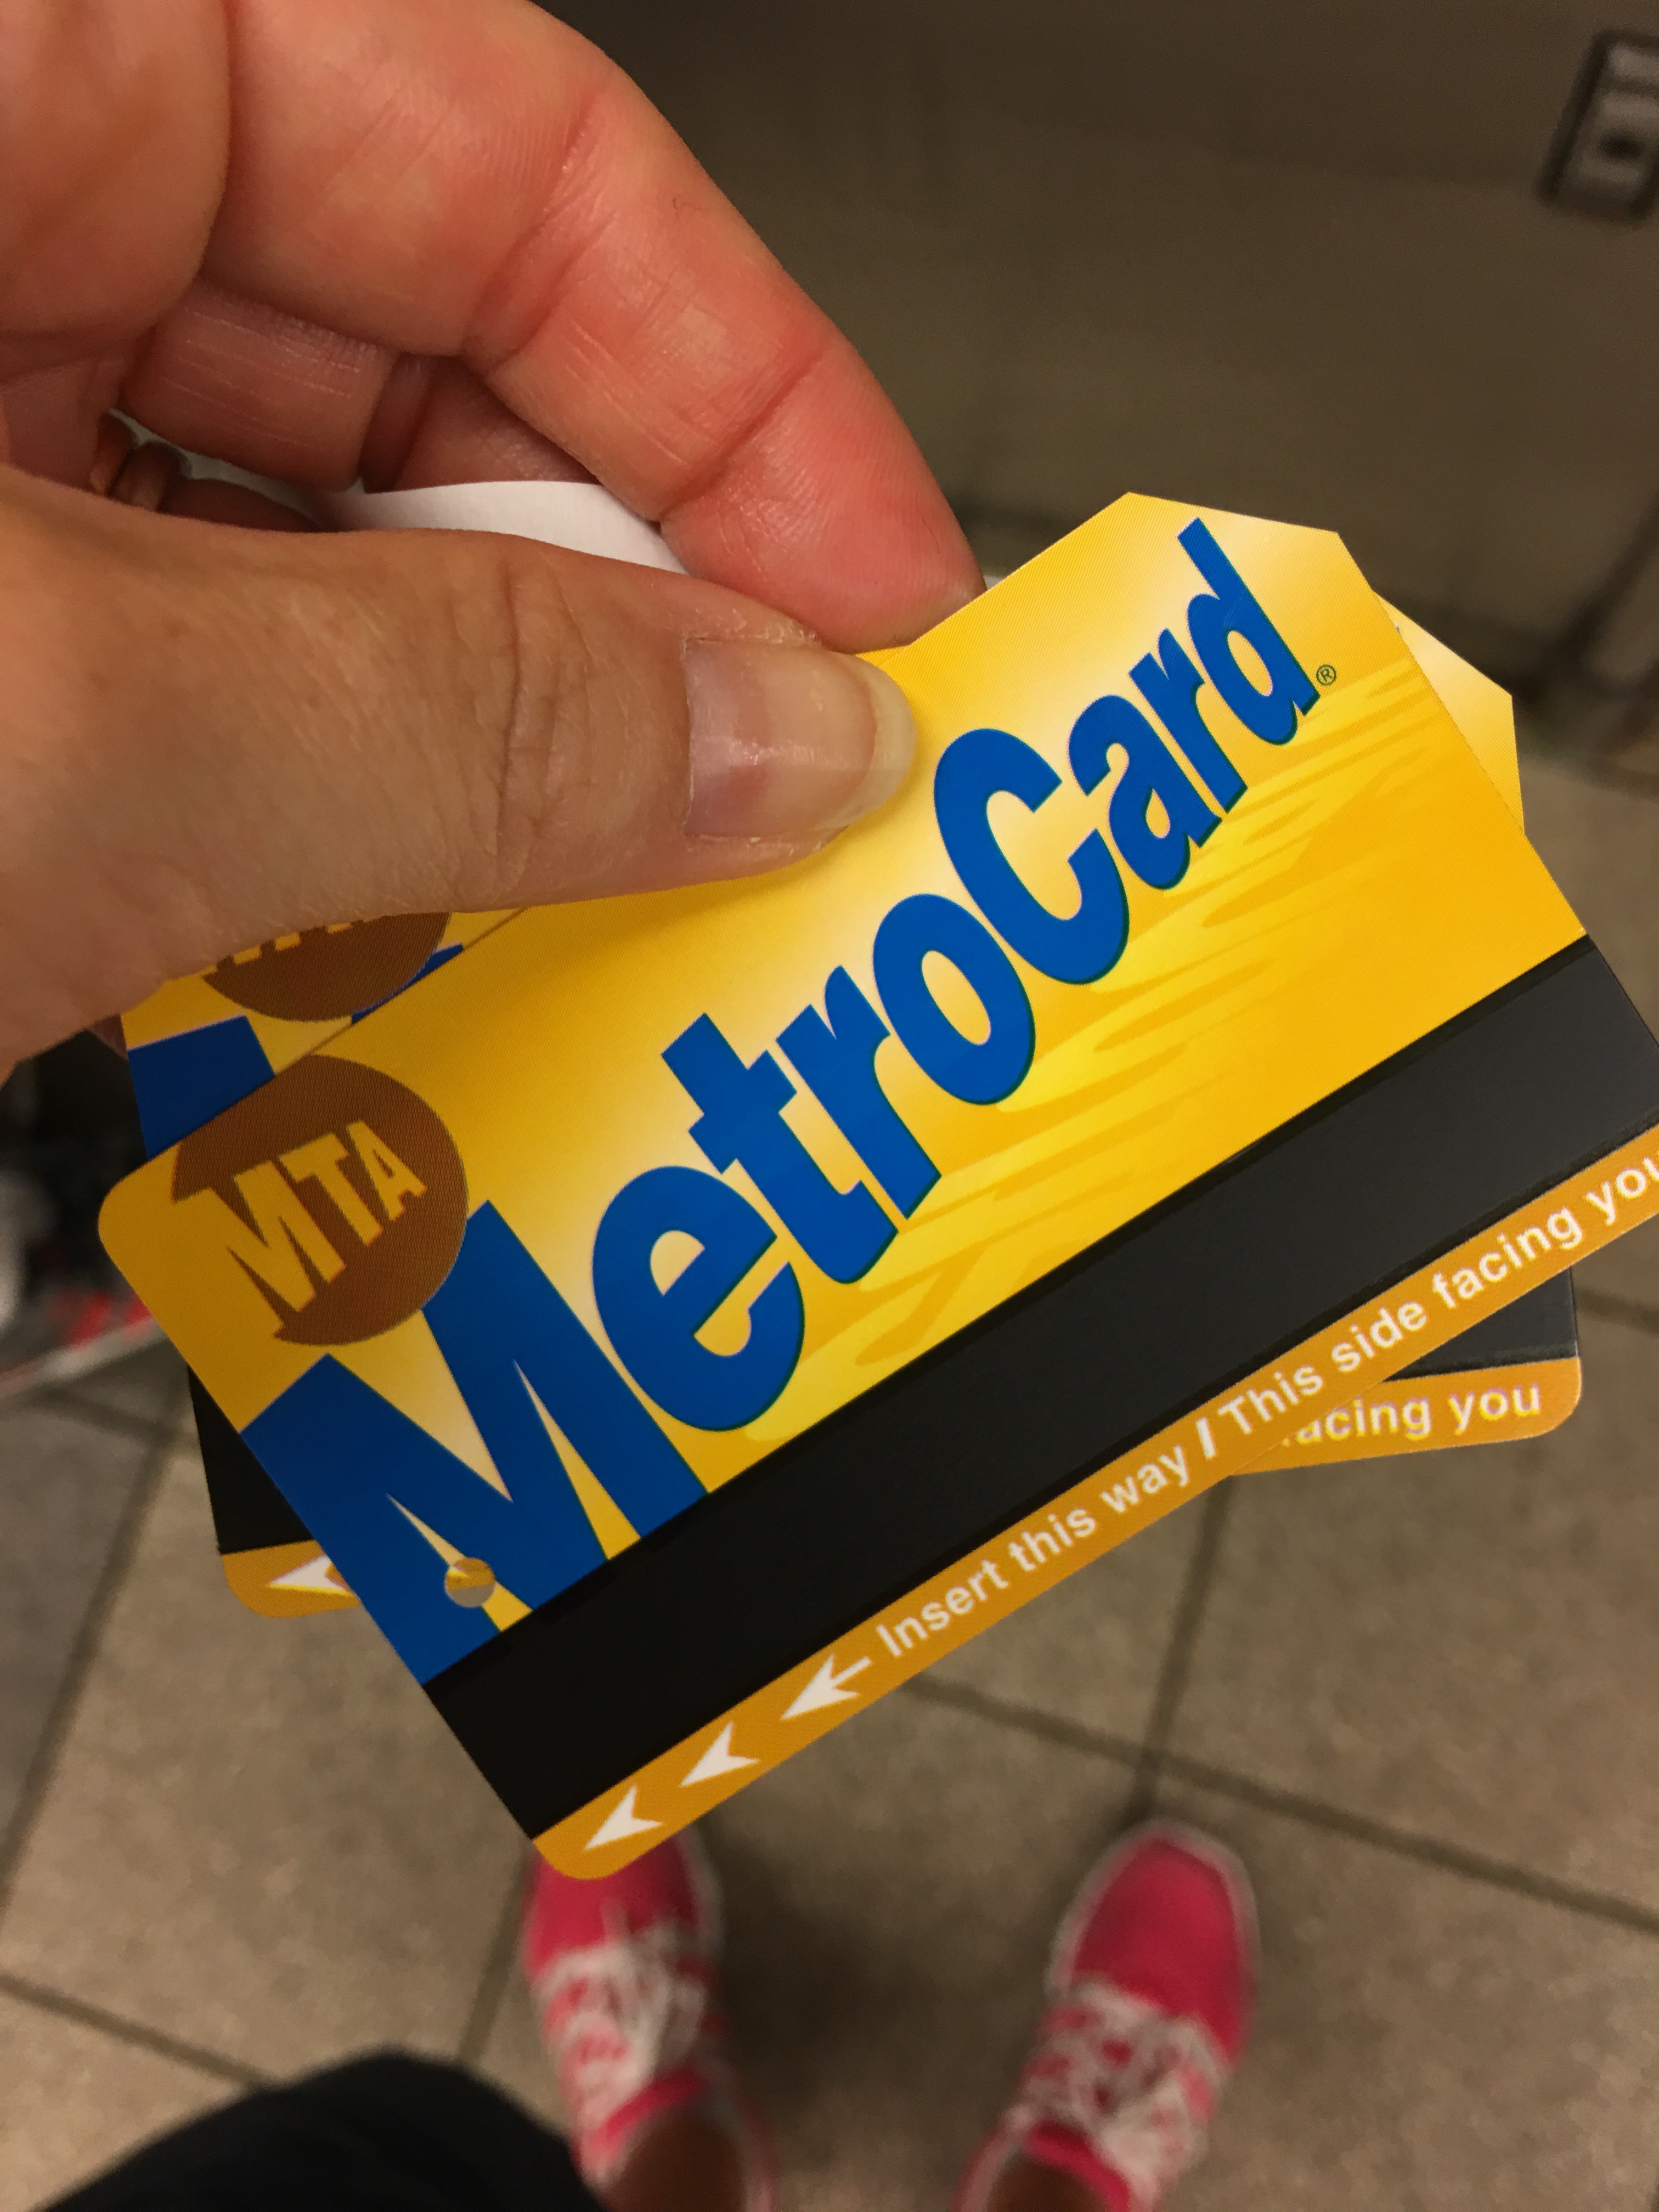 metro card